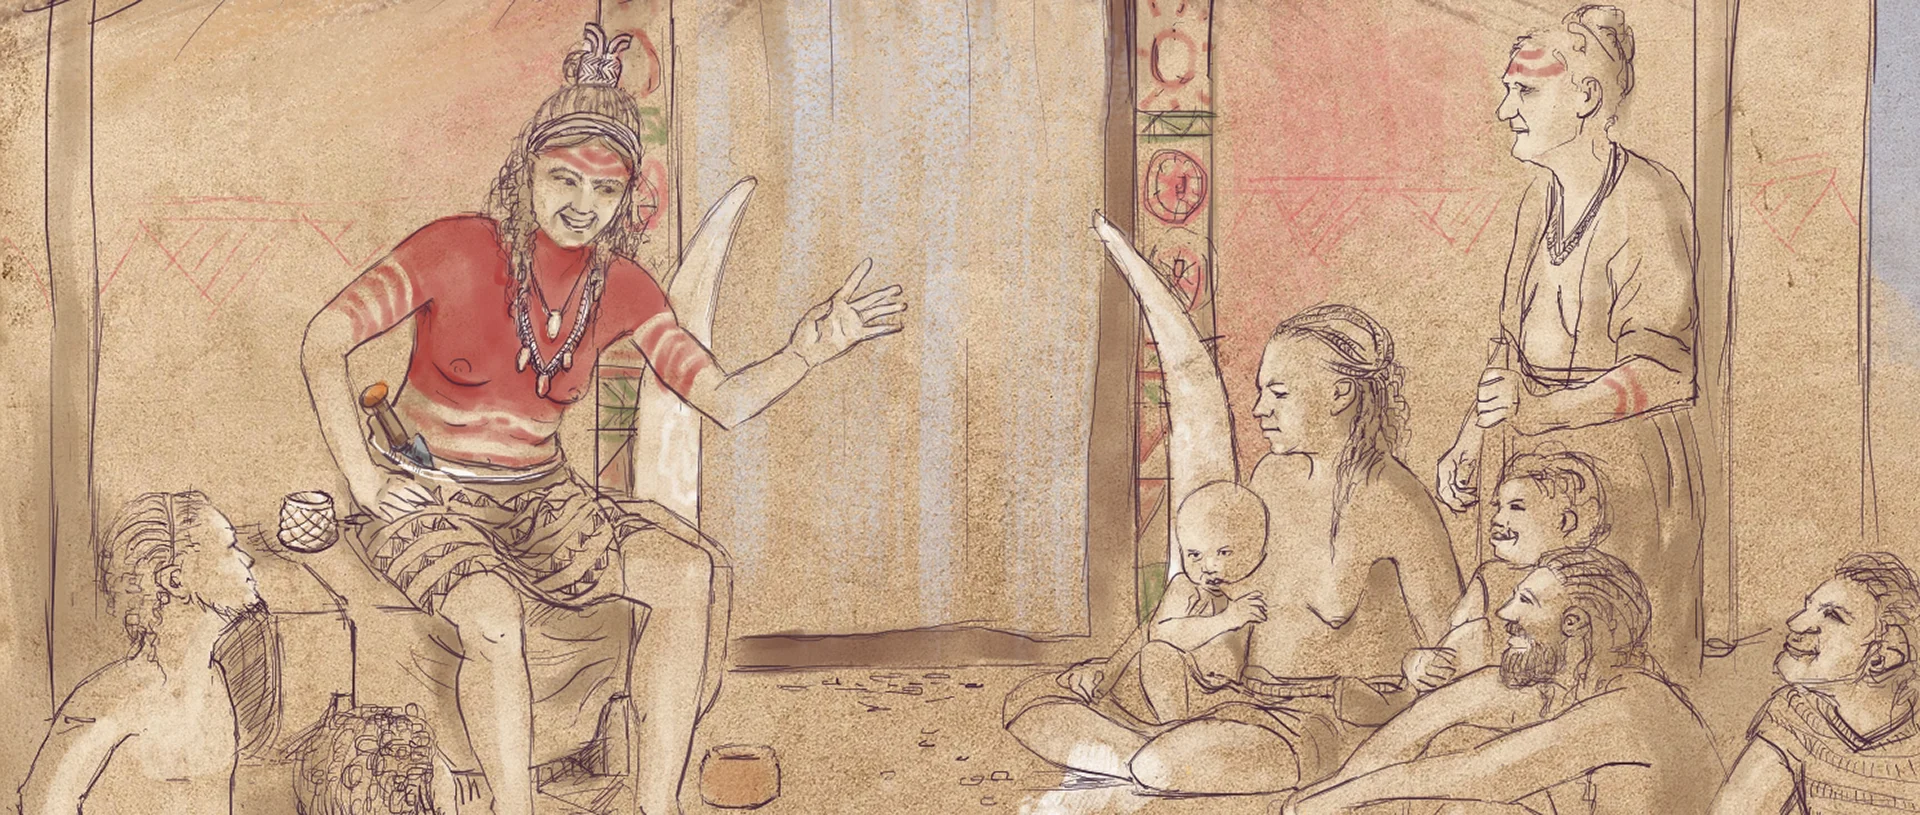 Zeichnung einer frühgeschichtlichen Versammlung um eine Feuerstelle, bei der die Anführerin das Wort hat